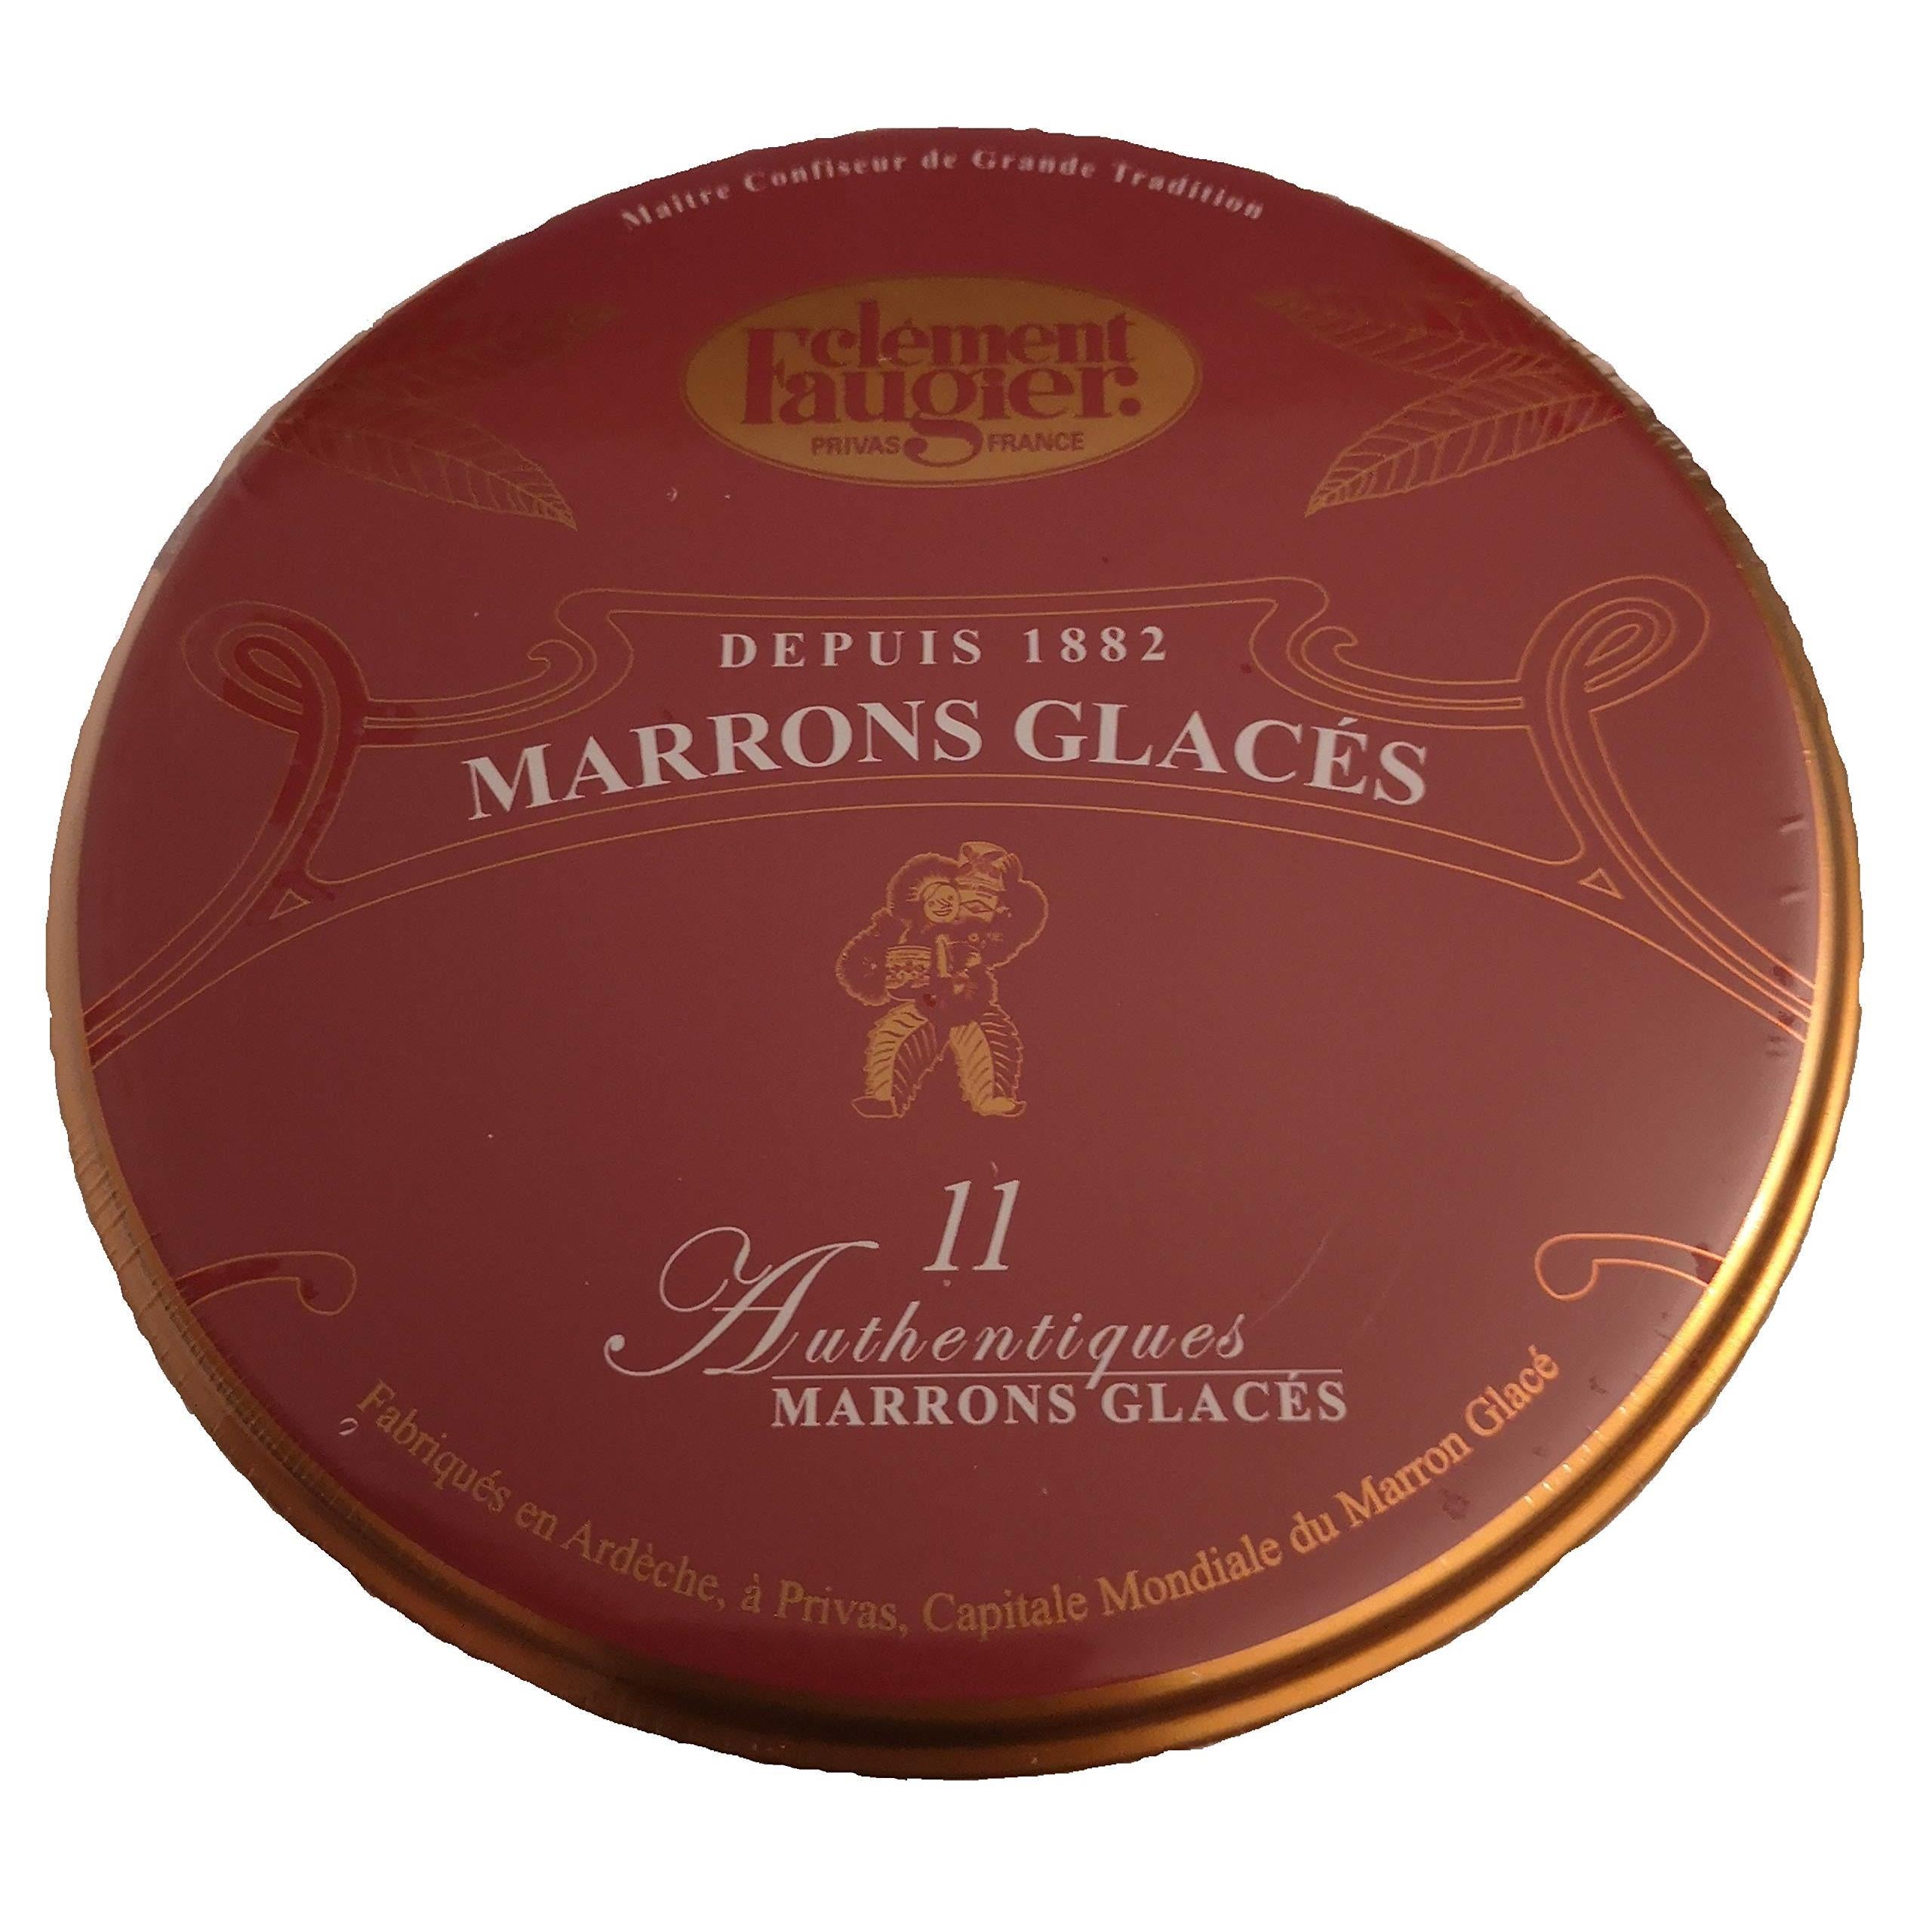 Clement Faugier Candied Chestnuts - Marrons Glaces 7.7 oz. - 11 pieces